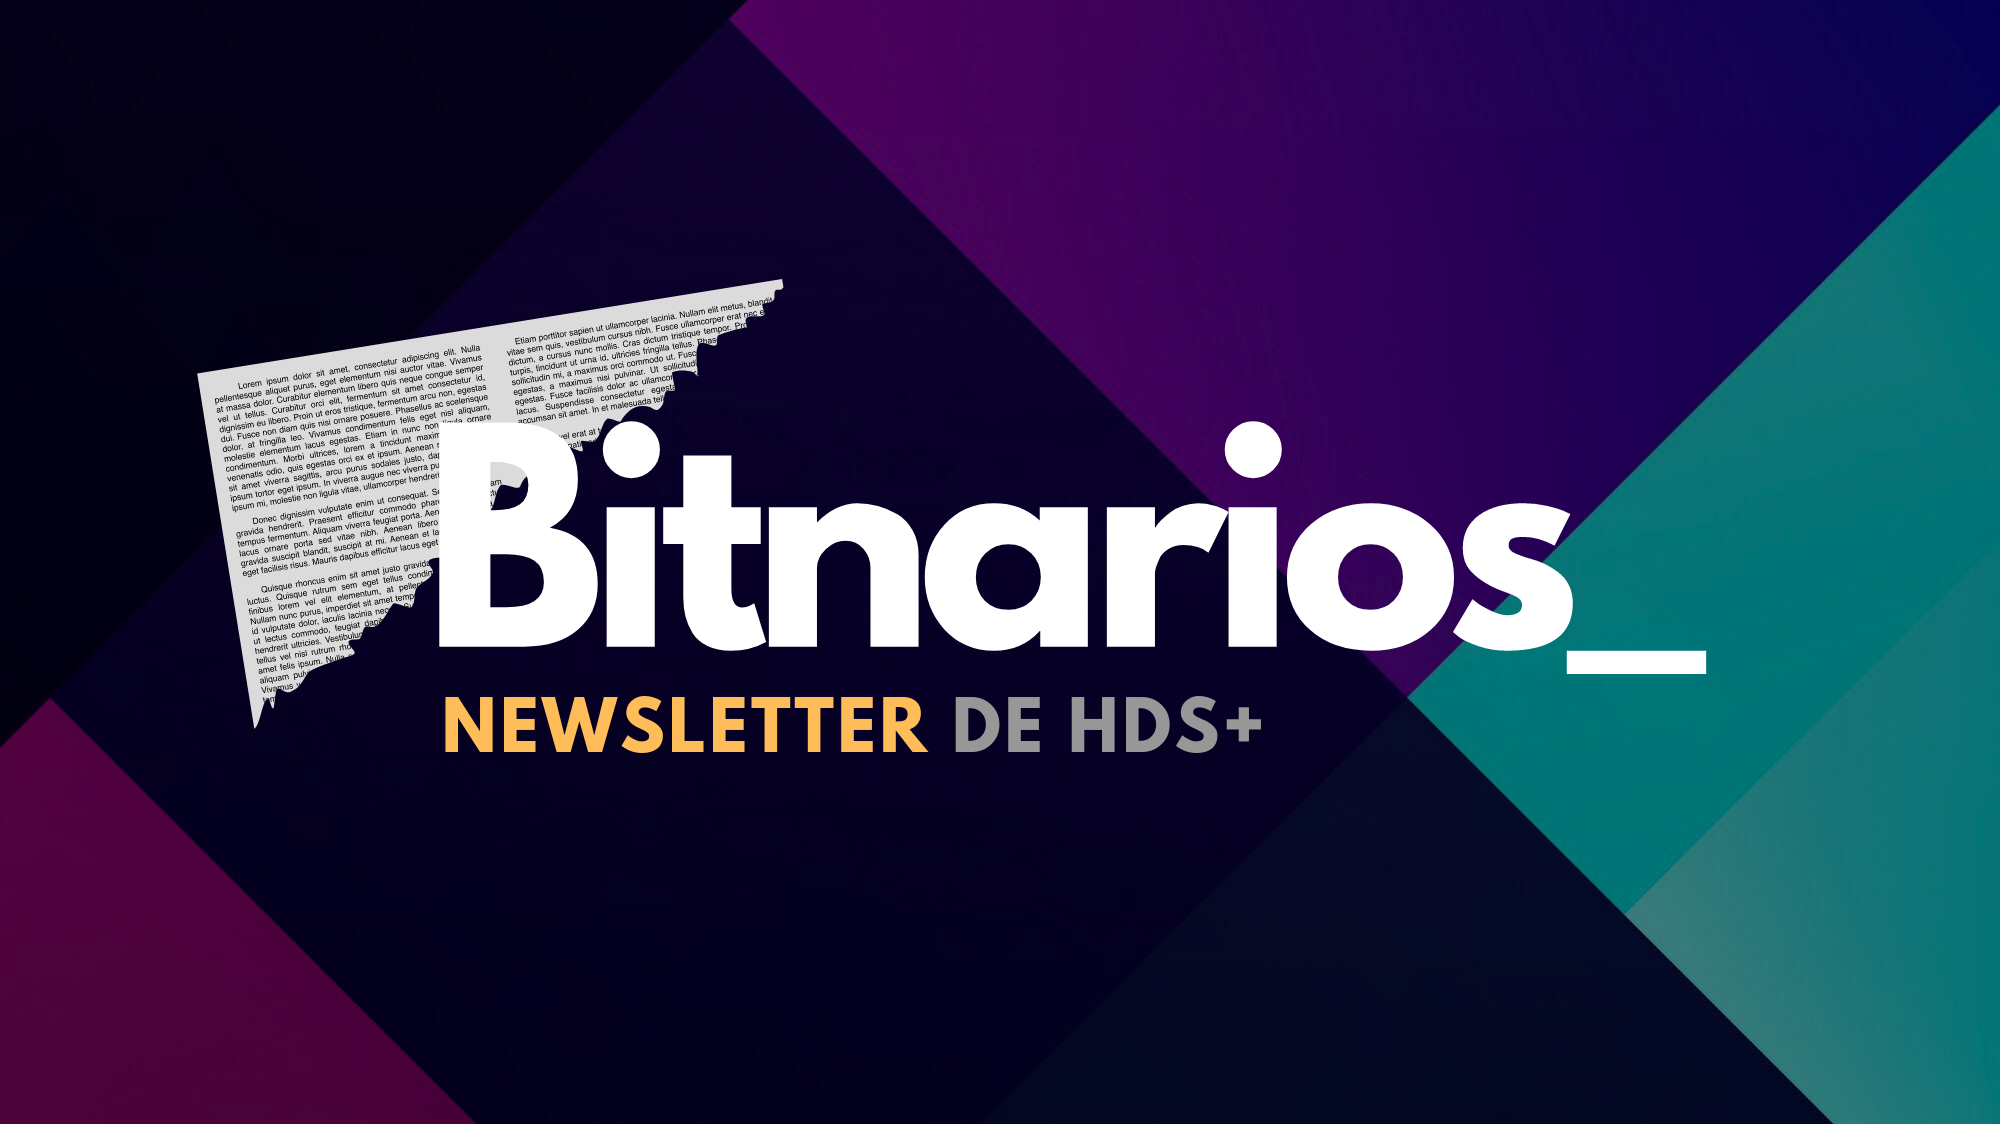 Bienvenidos a la nueva Newsletter de HDS+: Bitnarios_